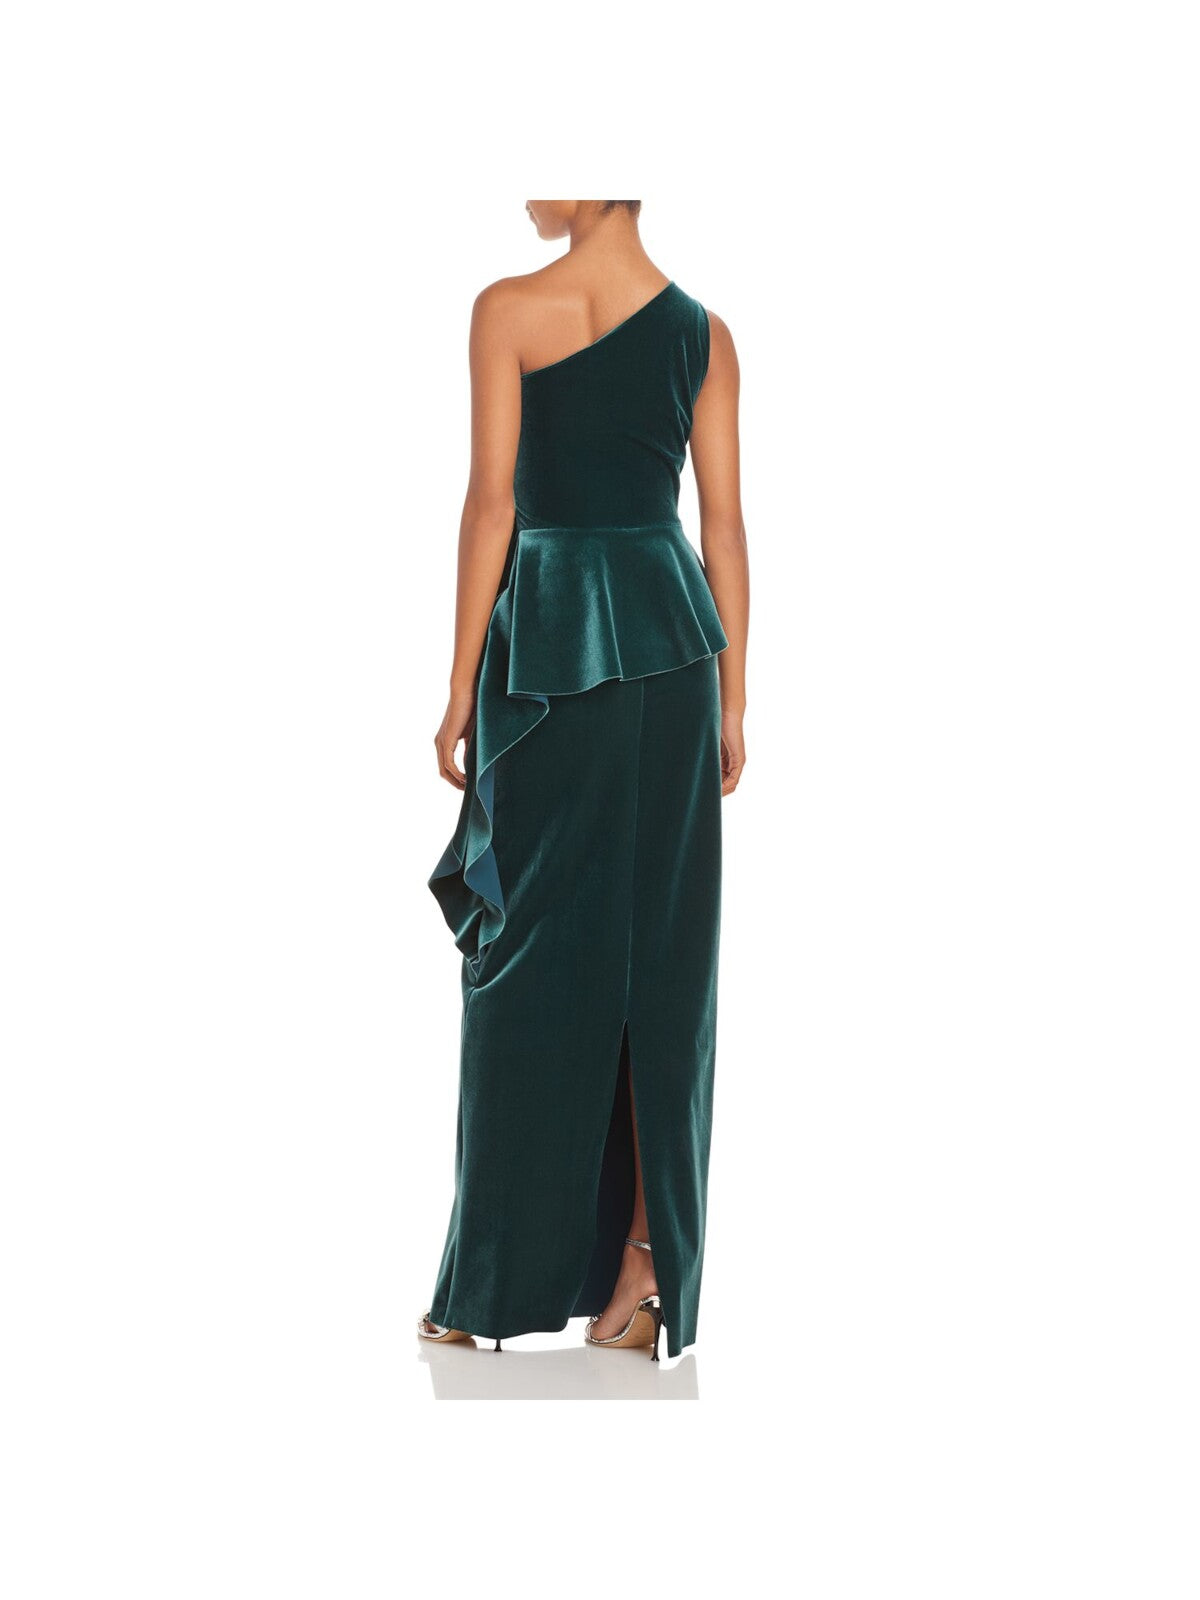 CHIARA BONI Womens Green Pleated Ruffled Velvet Sleeveless Asymmetrical Neckline Full-Length Formal Gown Dress 44